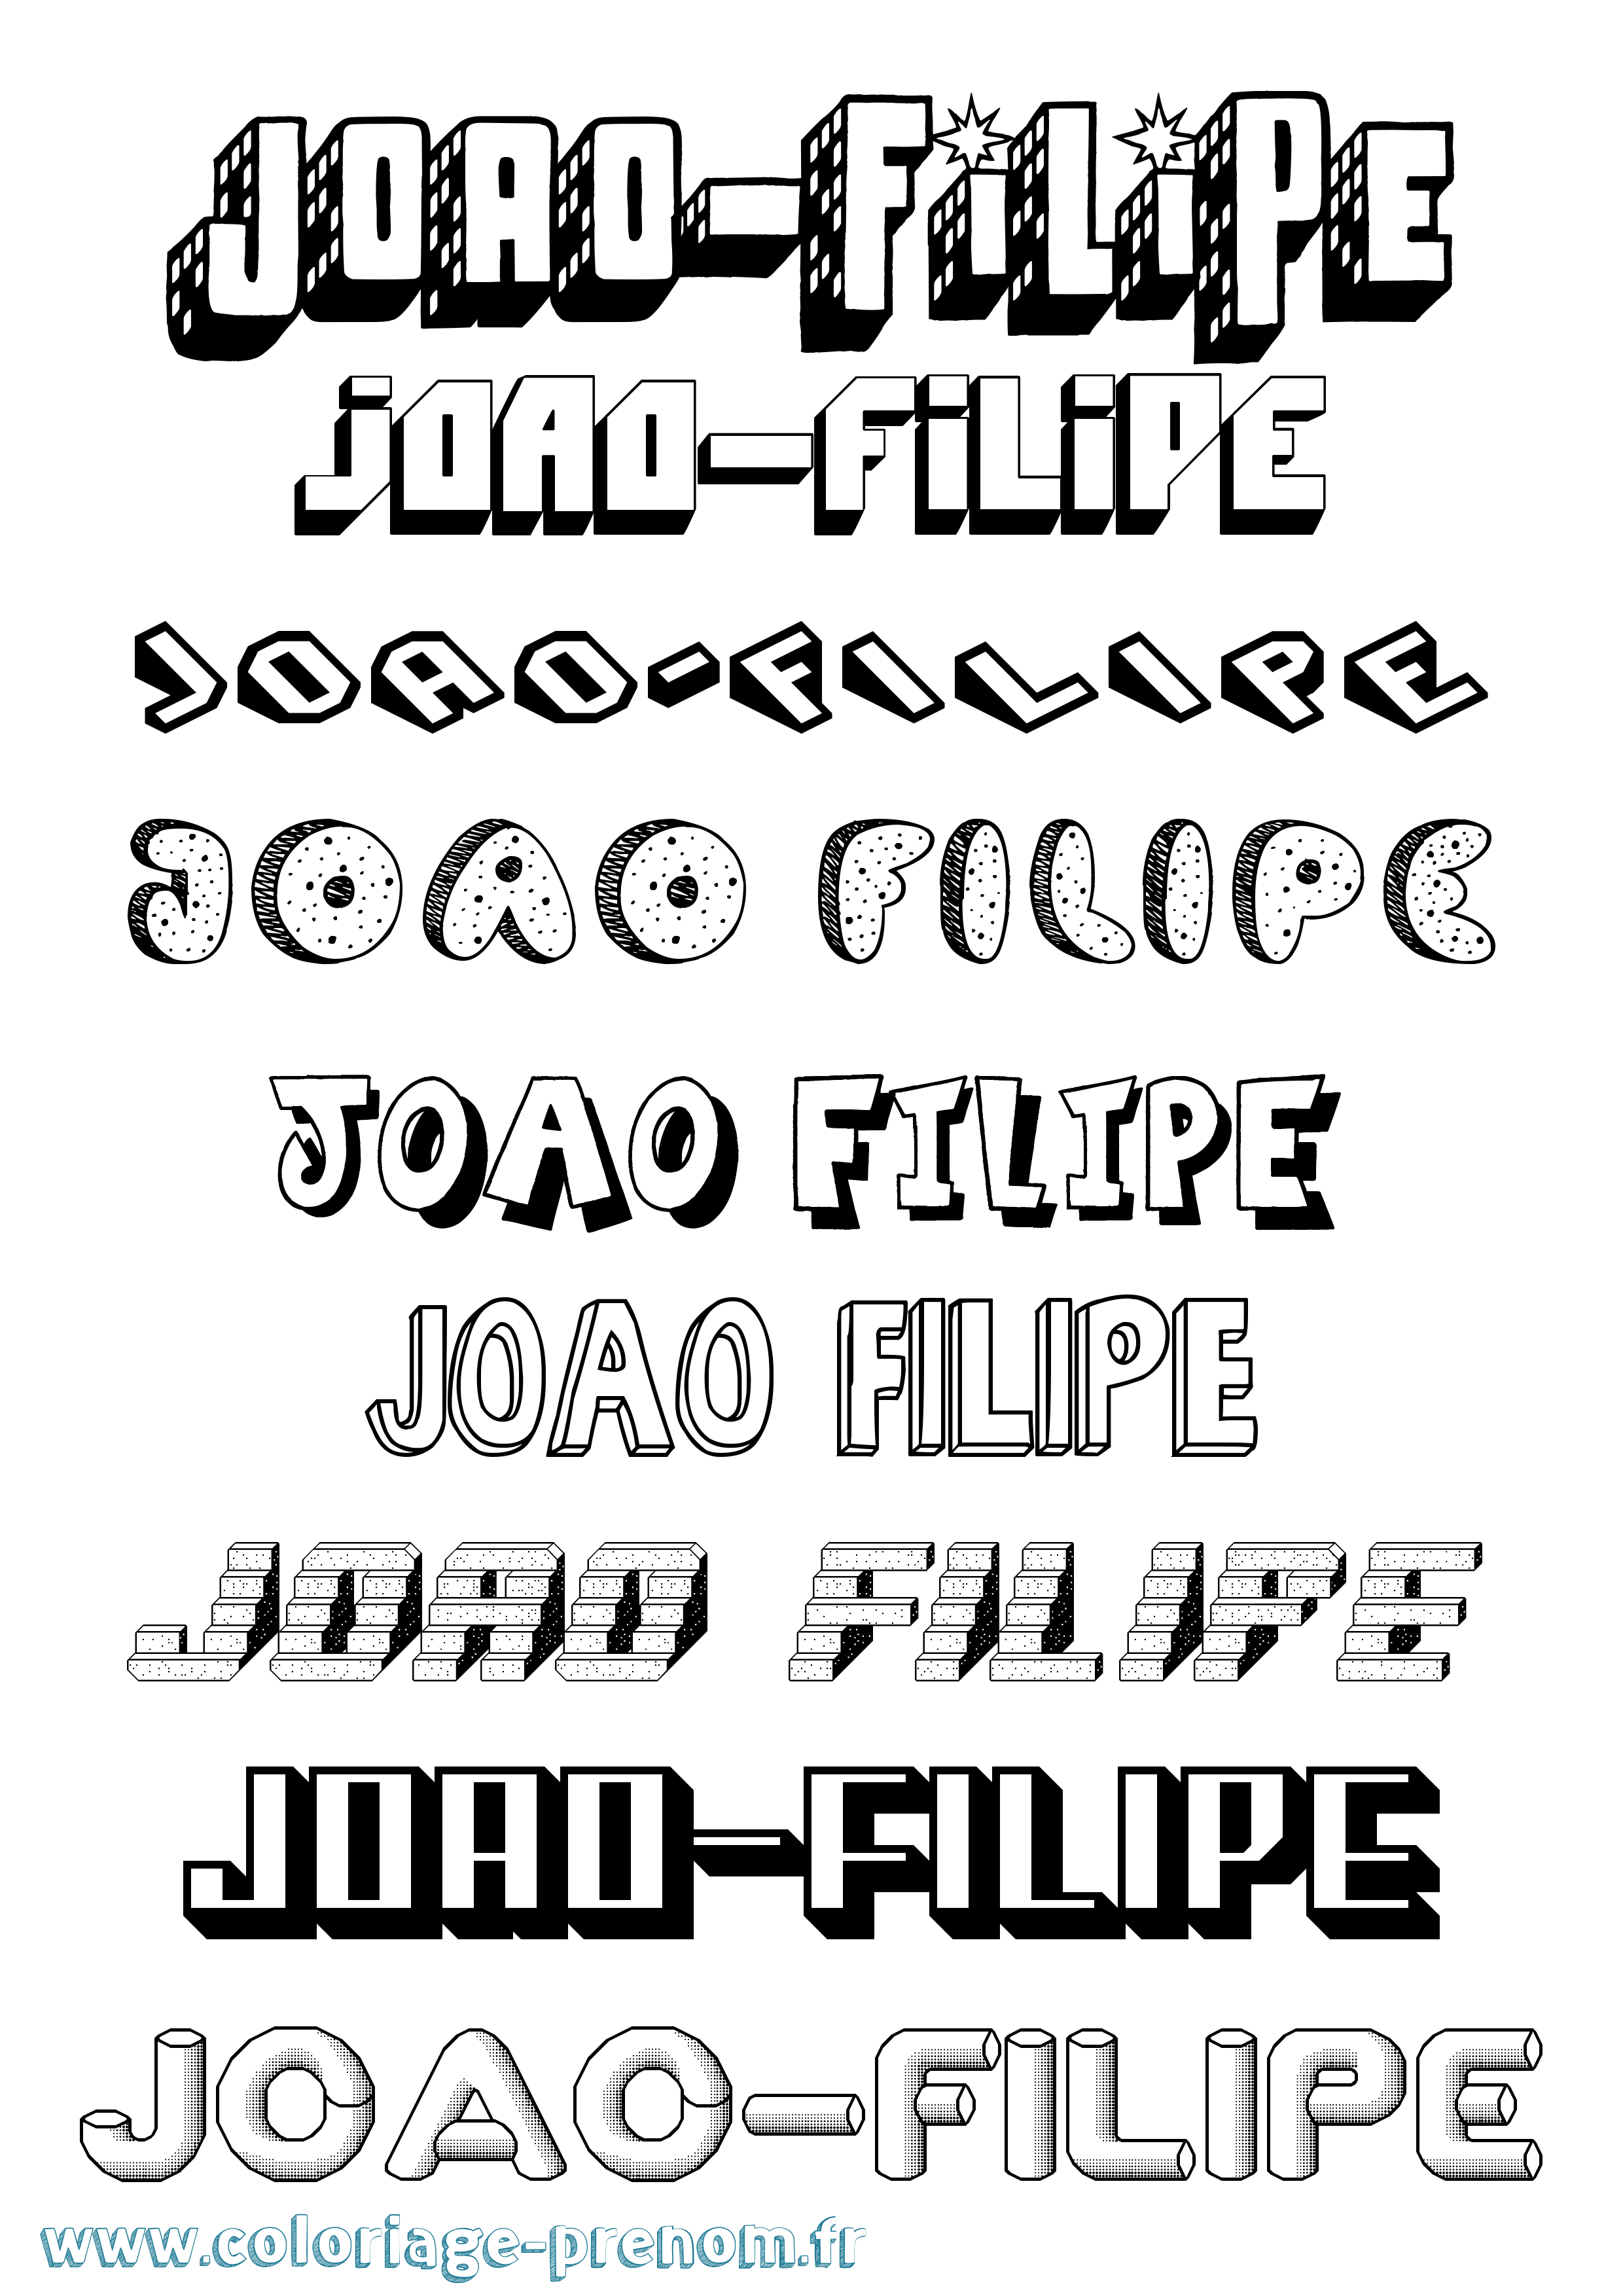 Coloriage prénom Joao-Filipe Effet 3D